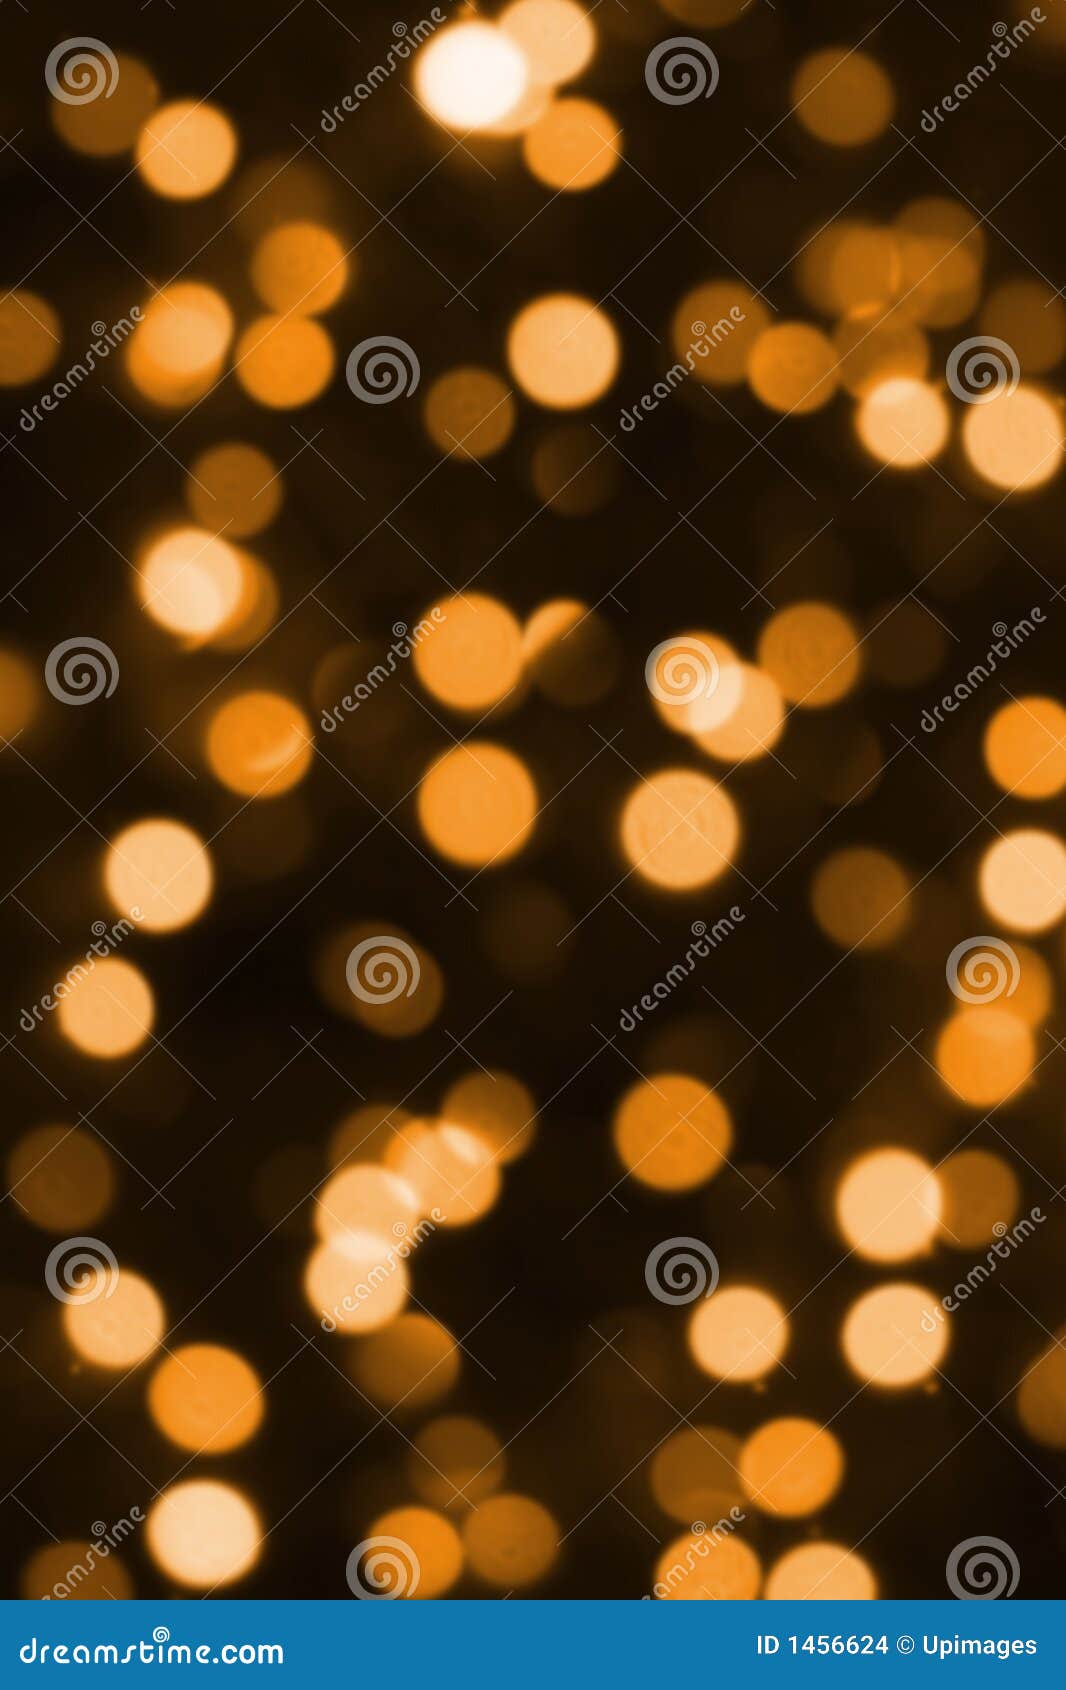 Christmas Festive Illumination Stock Photo - Image of glow, gala: 1456624